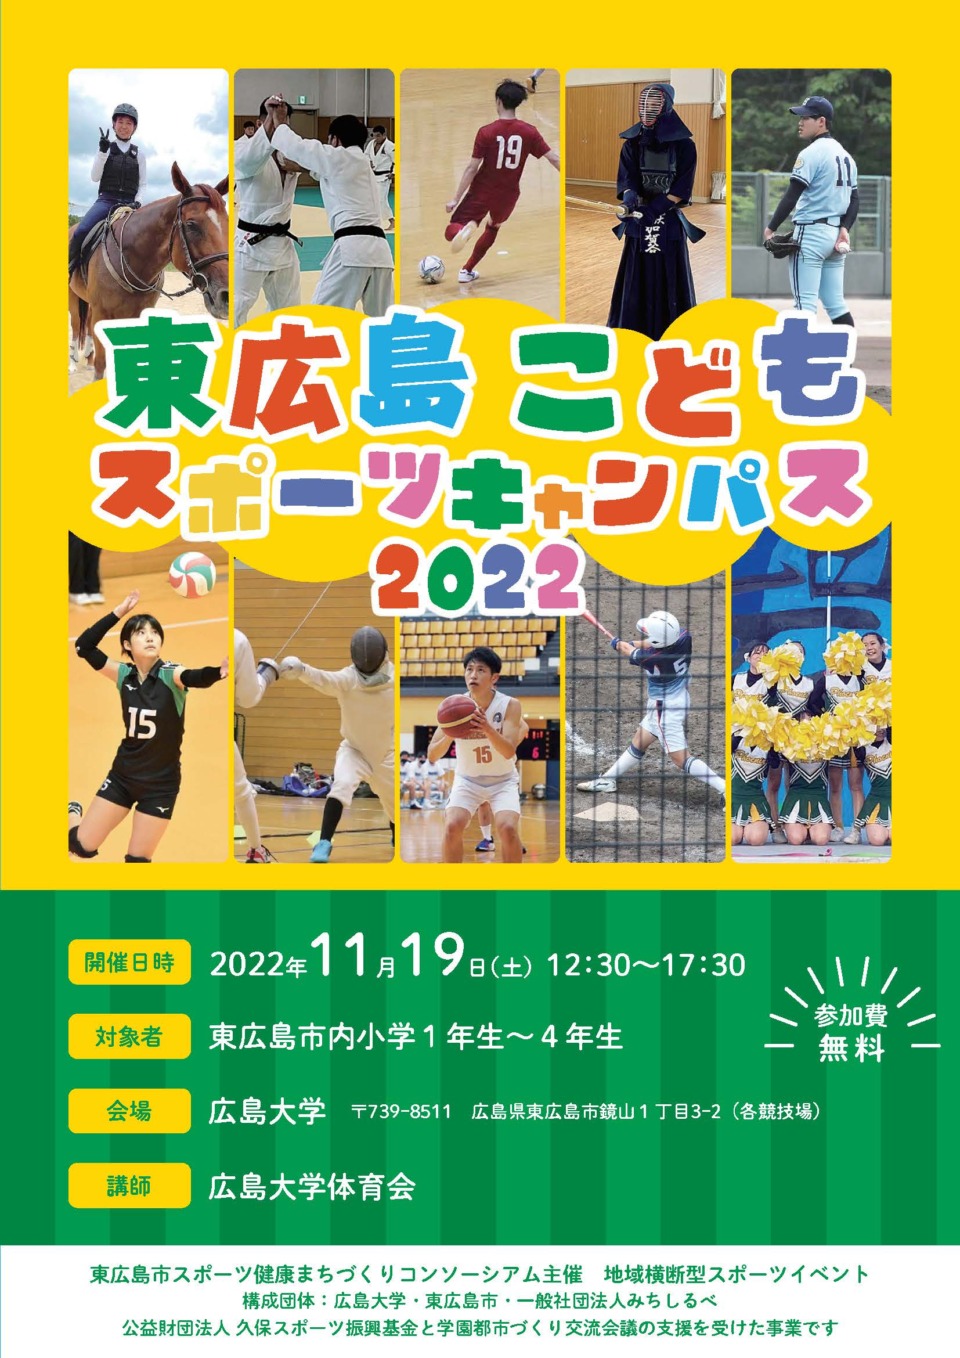 「東広島こどもスポーツキャンパス2022」を実施します！！